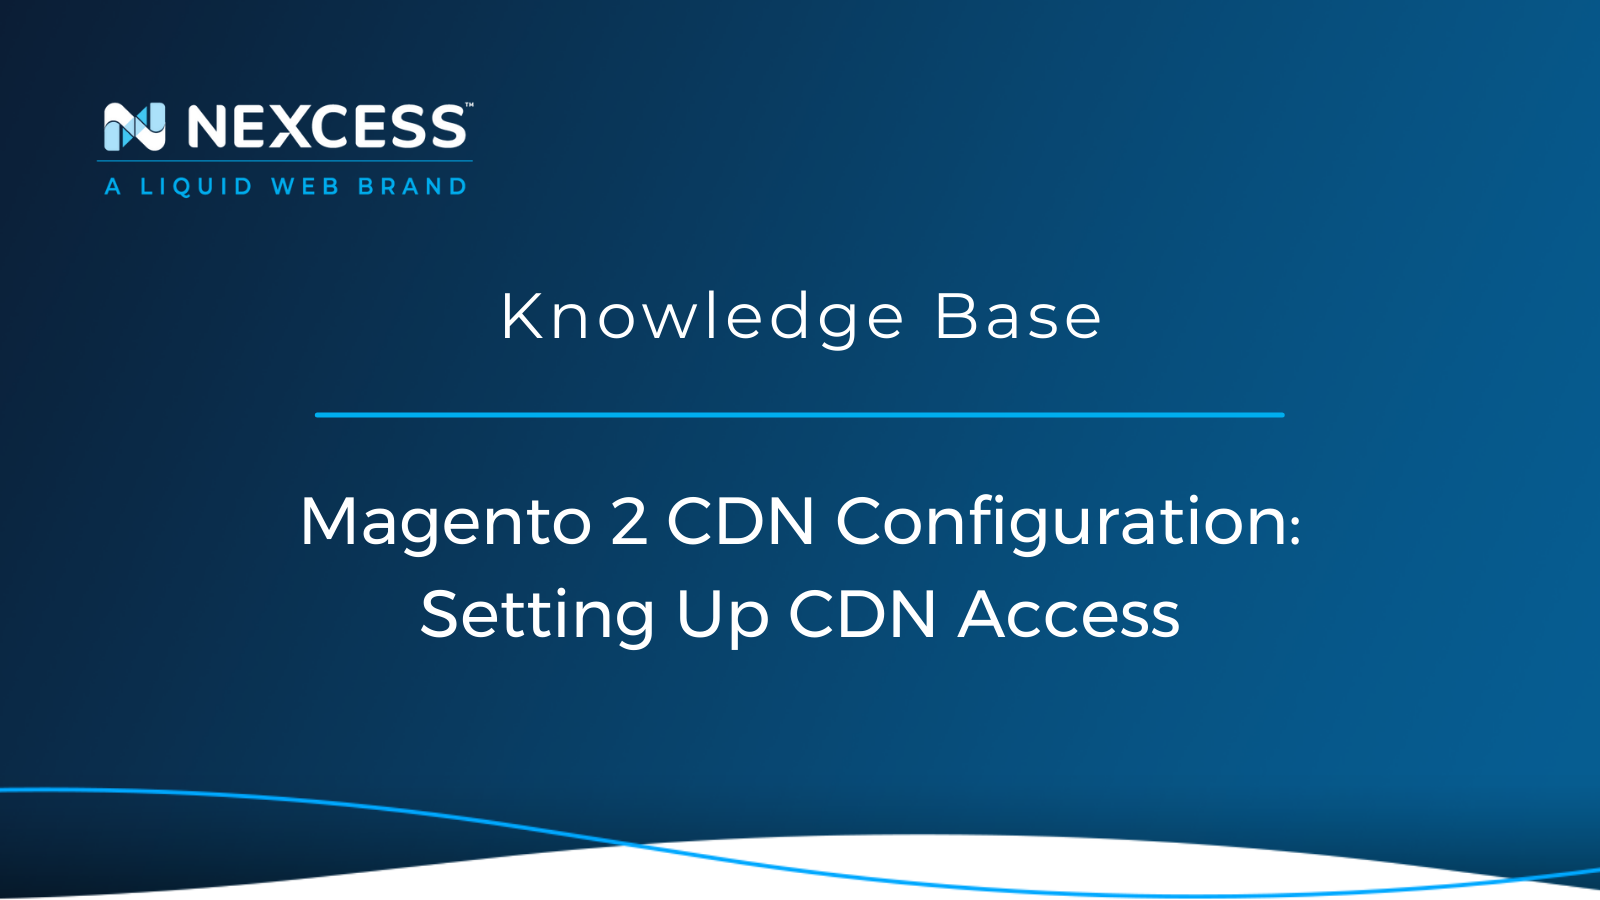 Magento 2 CDN Configuration: Setting Up CDN Access